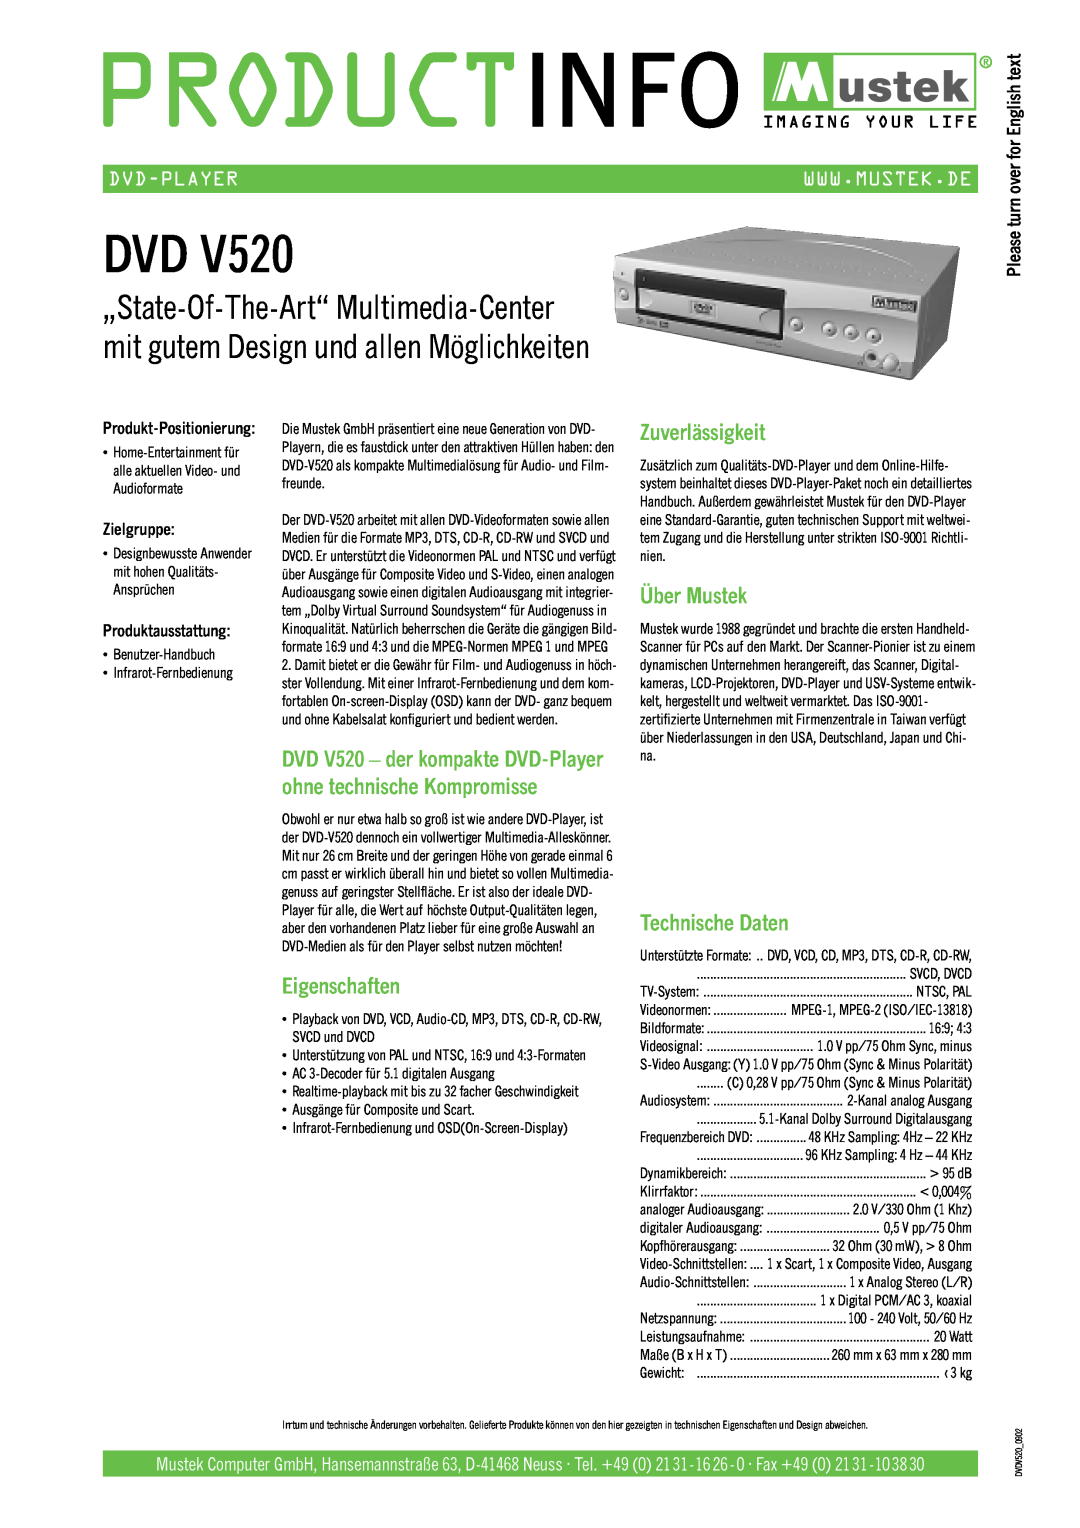 Mustek V520 Eigenschaften, Zuverlässigkeit, Über Mustek, Technische Daten, Dvd-Player, Zielgruppe, Produktausstattung 